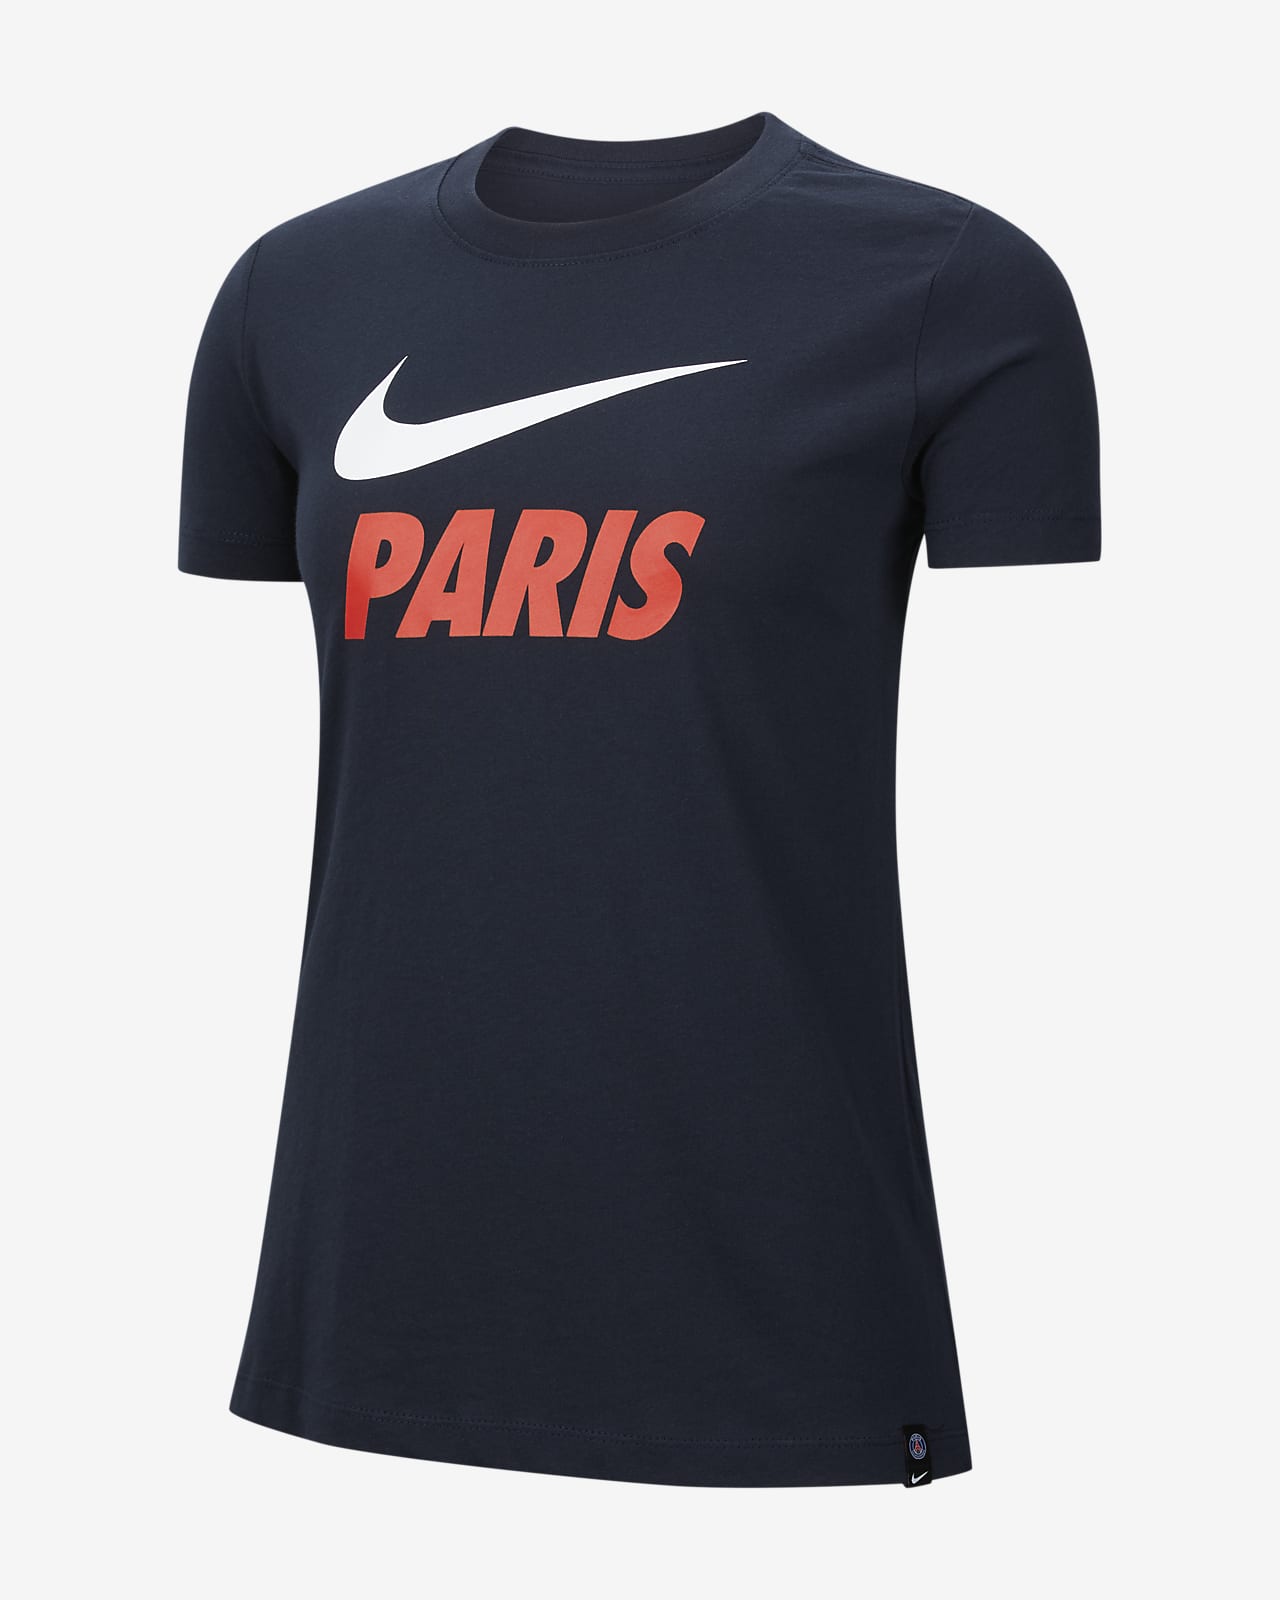 Найк париж. Футболка найк PSG. Майка Nike PSG. Футболка Nike Paris. Лонгслив Nike PSG.